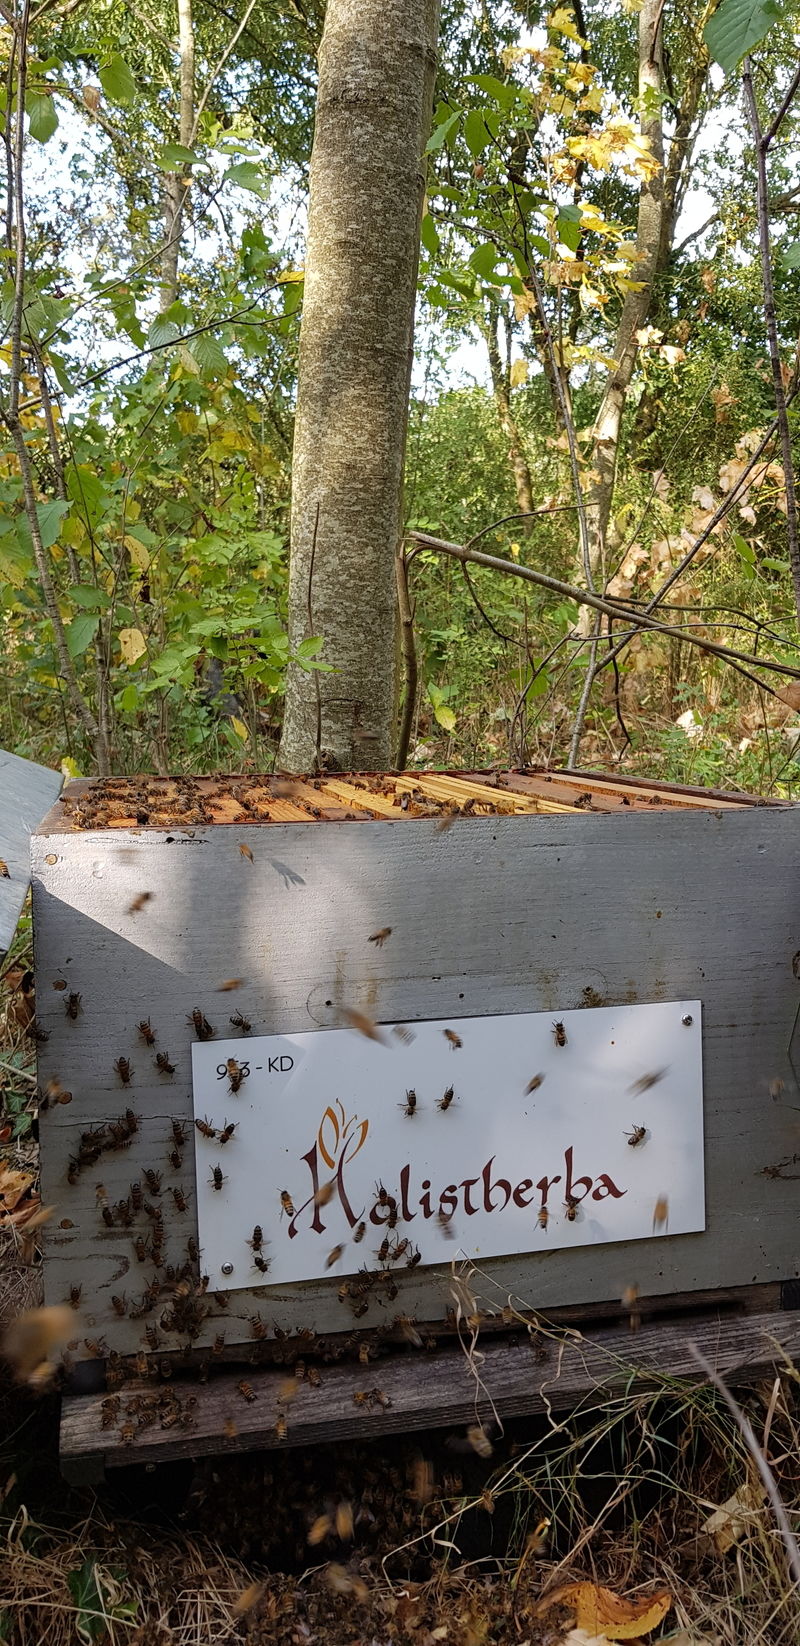 La ruche HOLISTHERBA Santé Nature